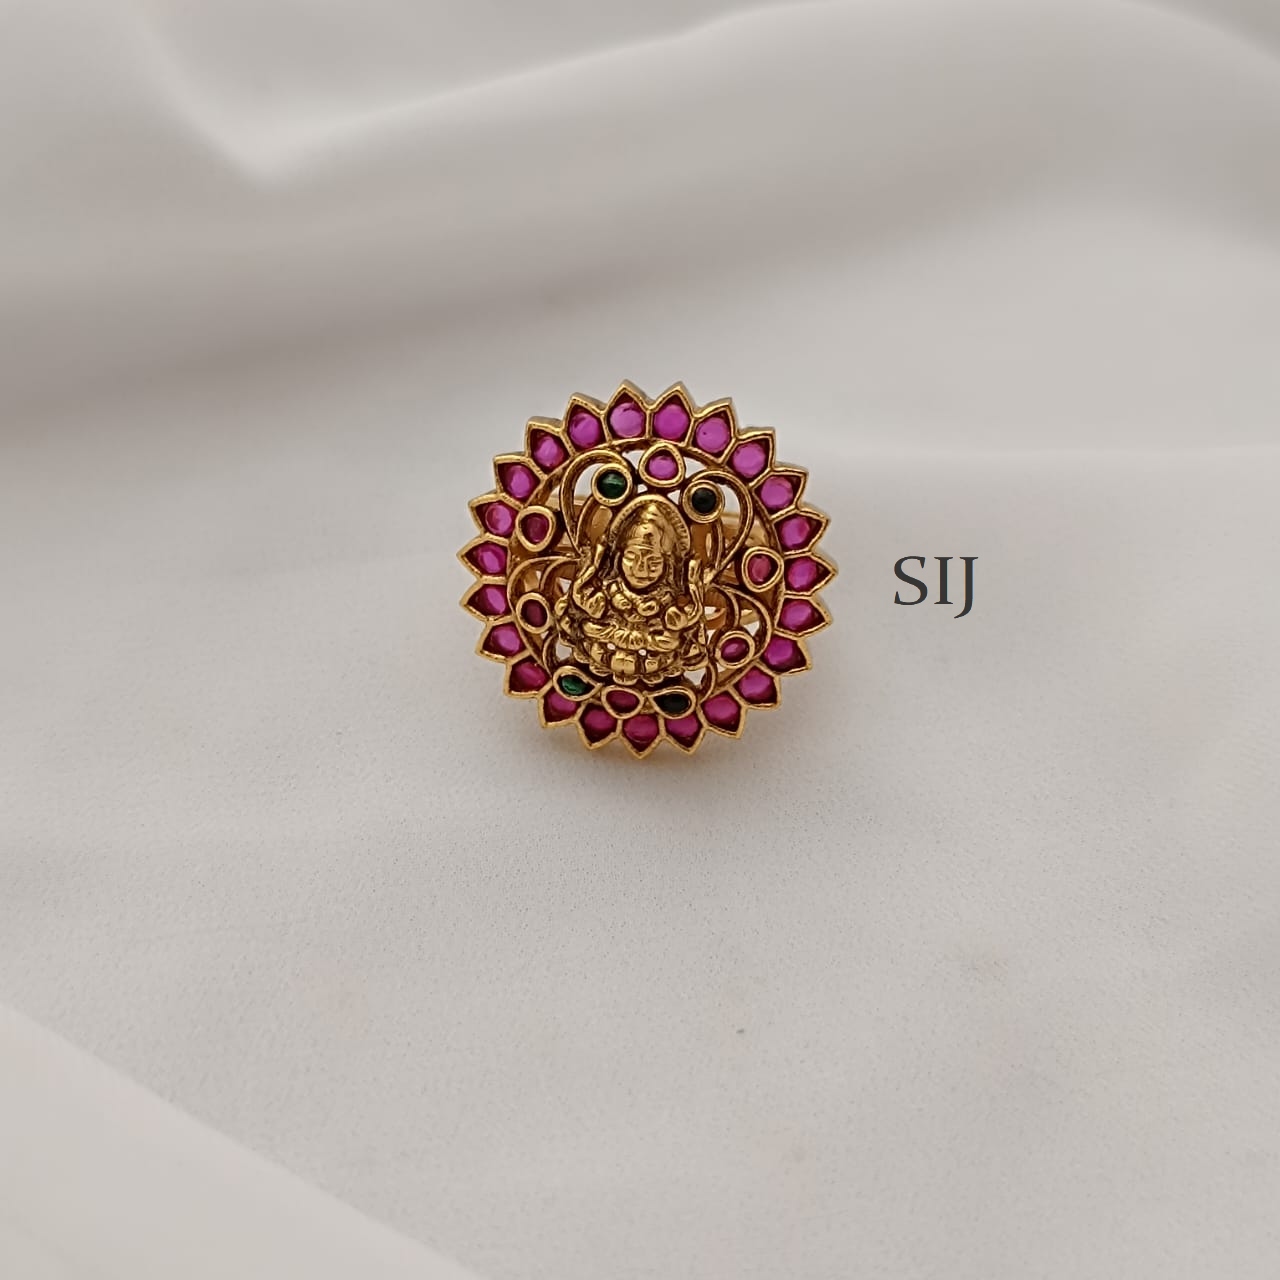 Buy Antique Lakshmi Ring Online | Tulsi Jewellers - JewelFlix